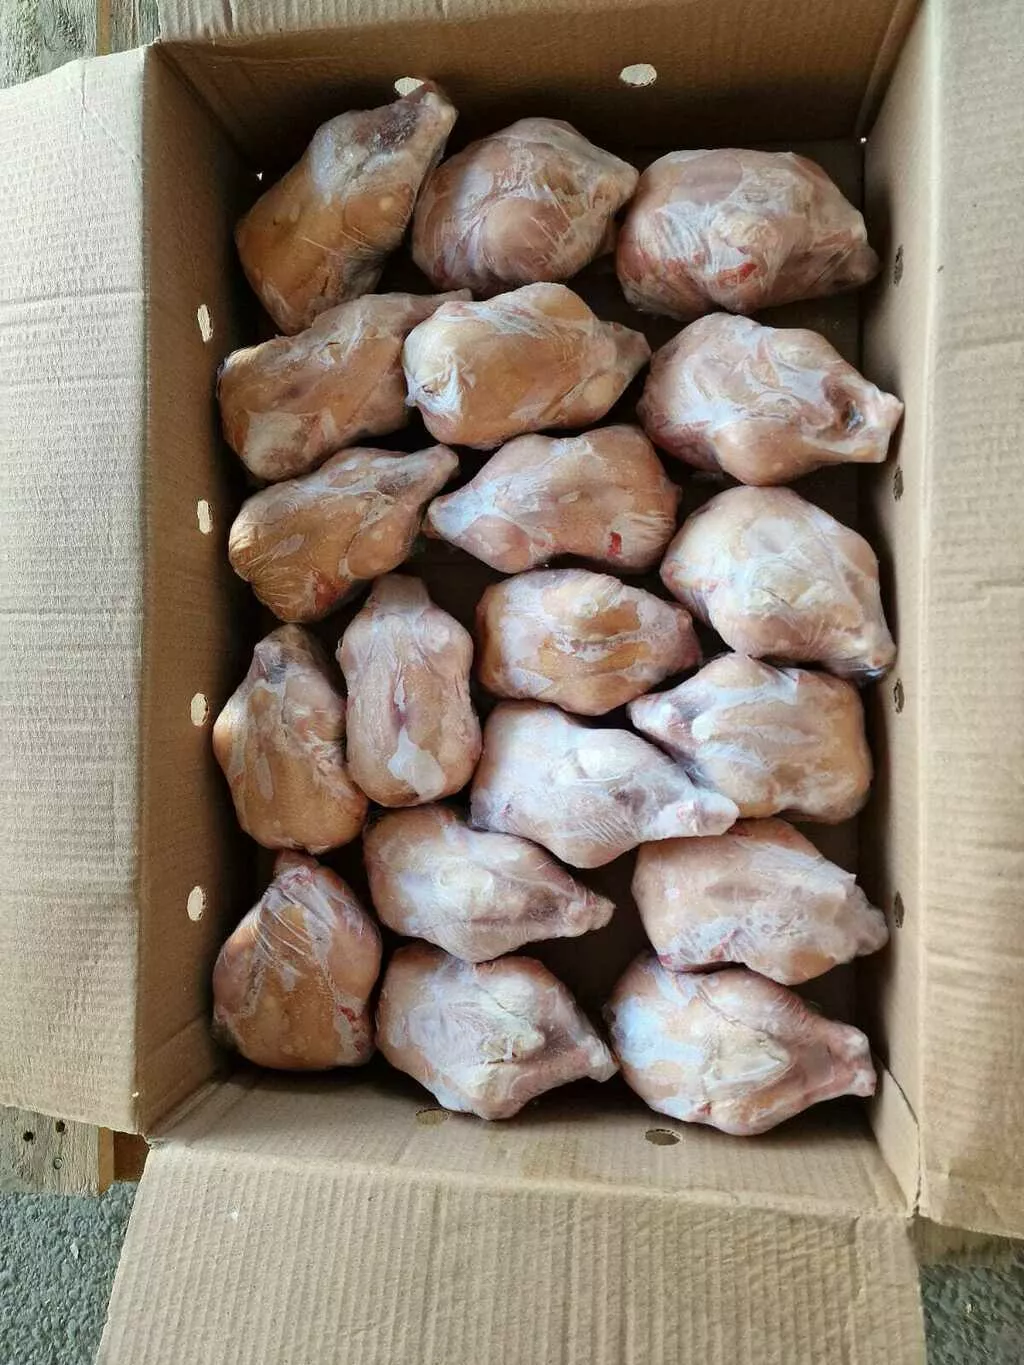 мясо цыпленка бройлера 1кат.(корнишон) в Республике Беларусь